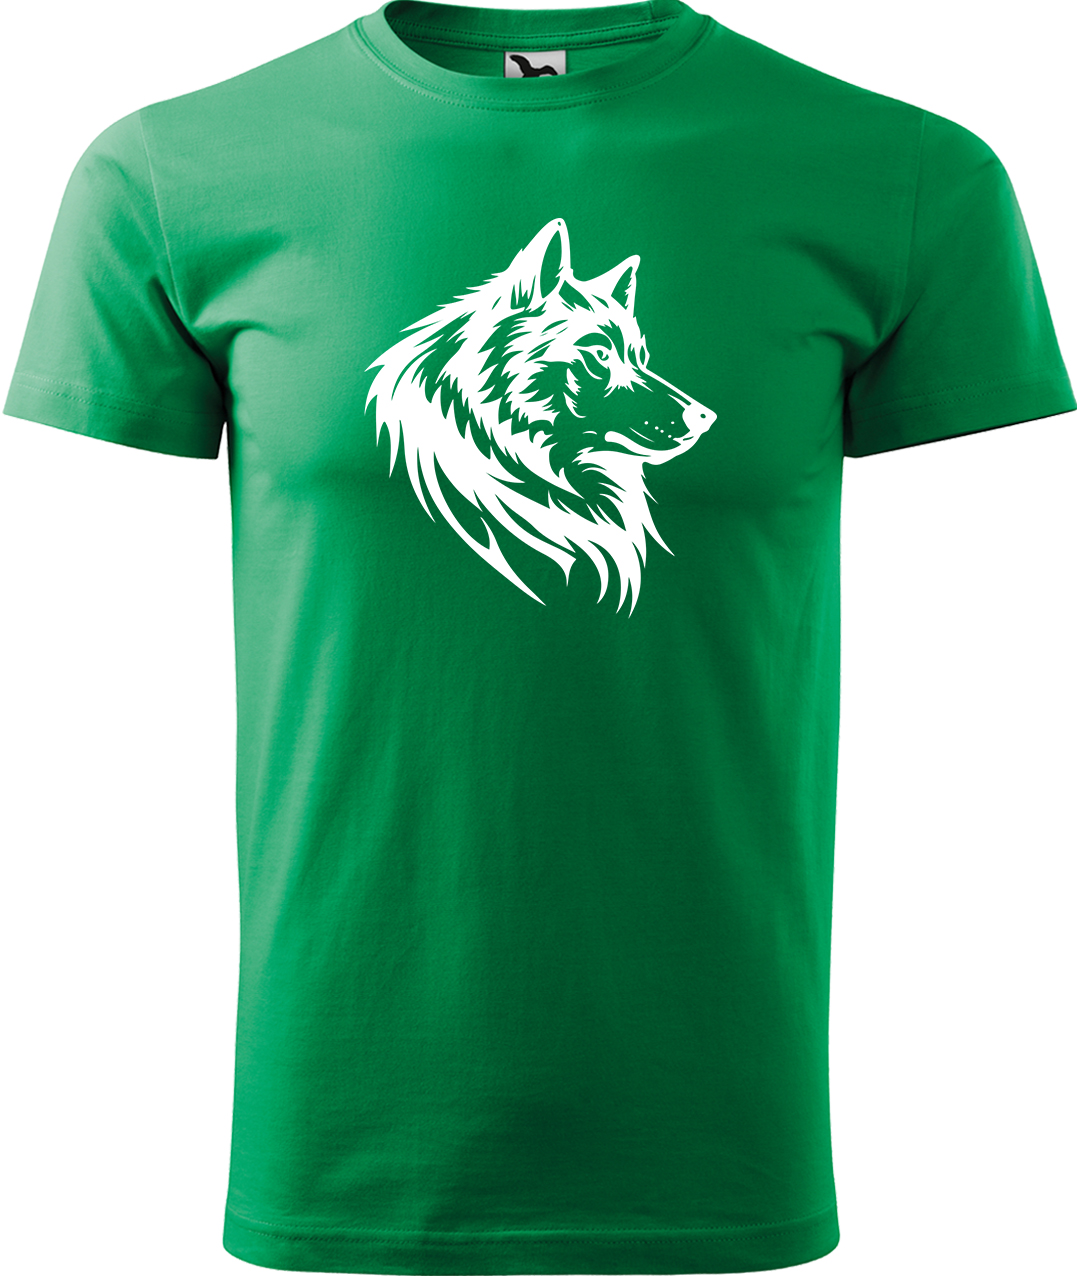 Pánské tričko s vlkem - Wolf Velikost: L, Barva: Středně zelená (16), Střih: pánský